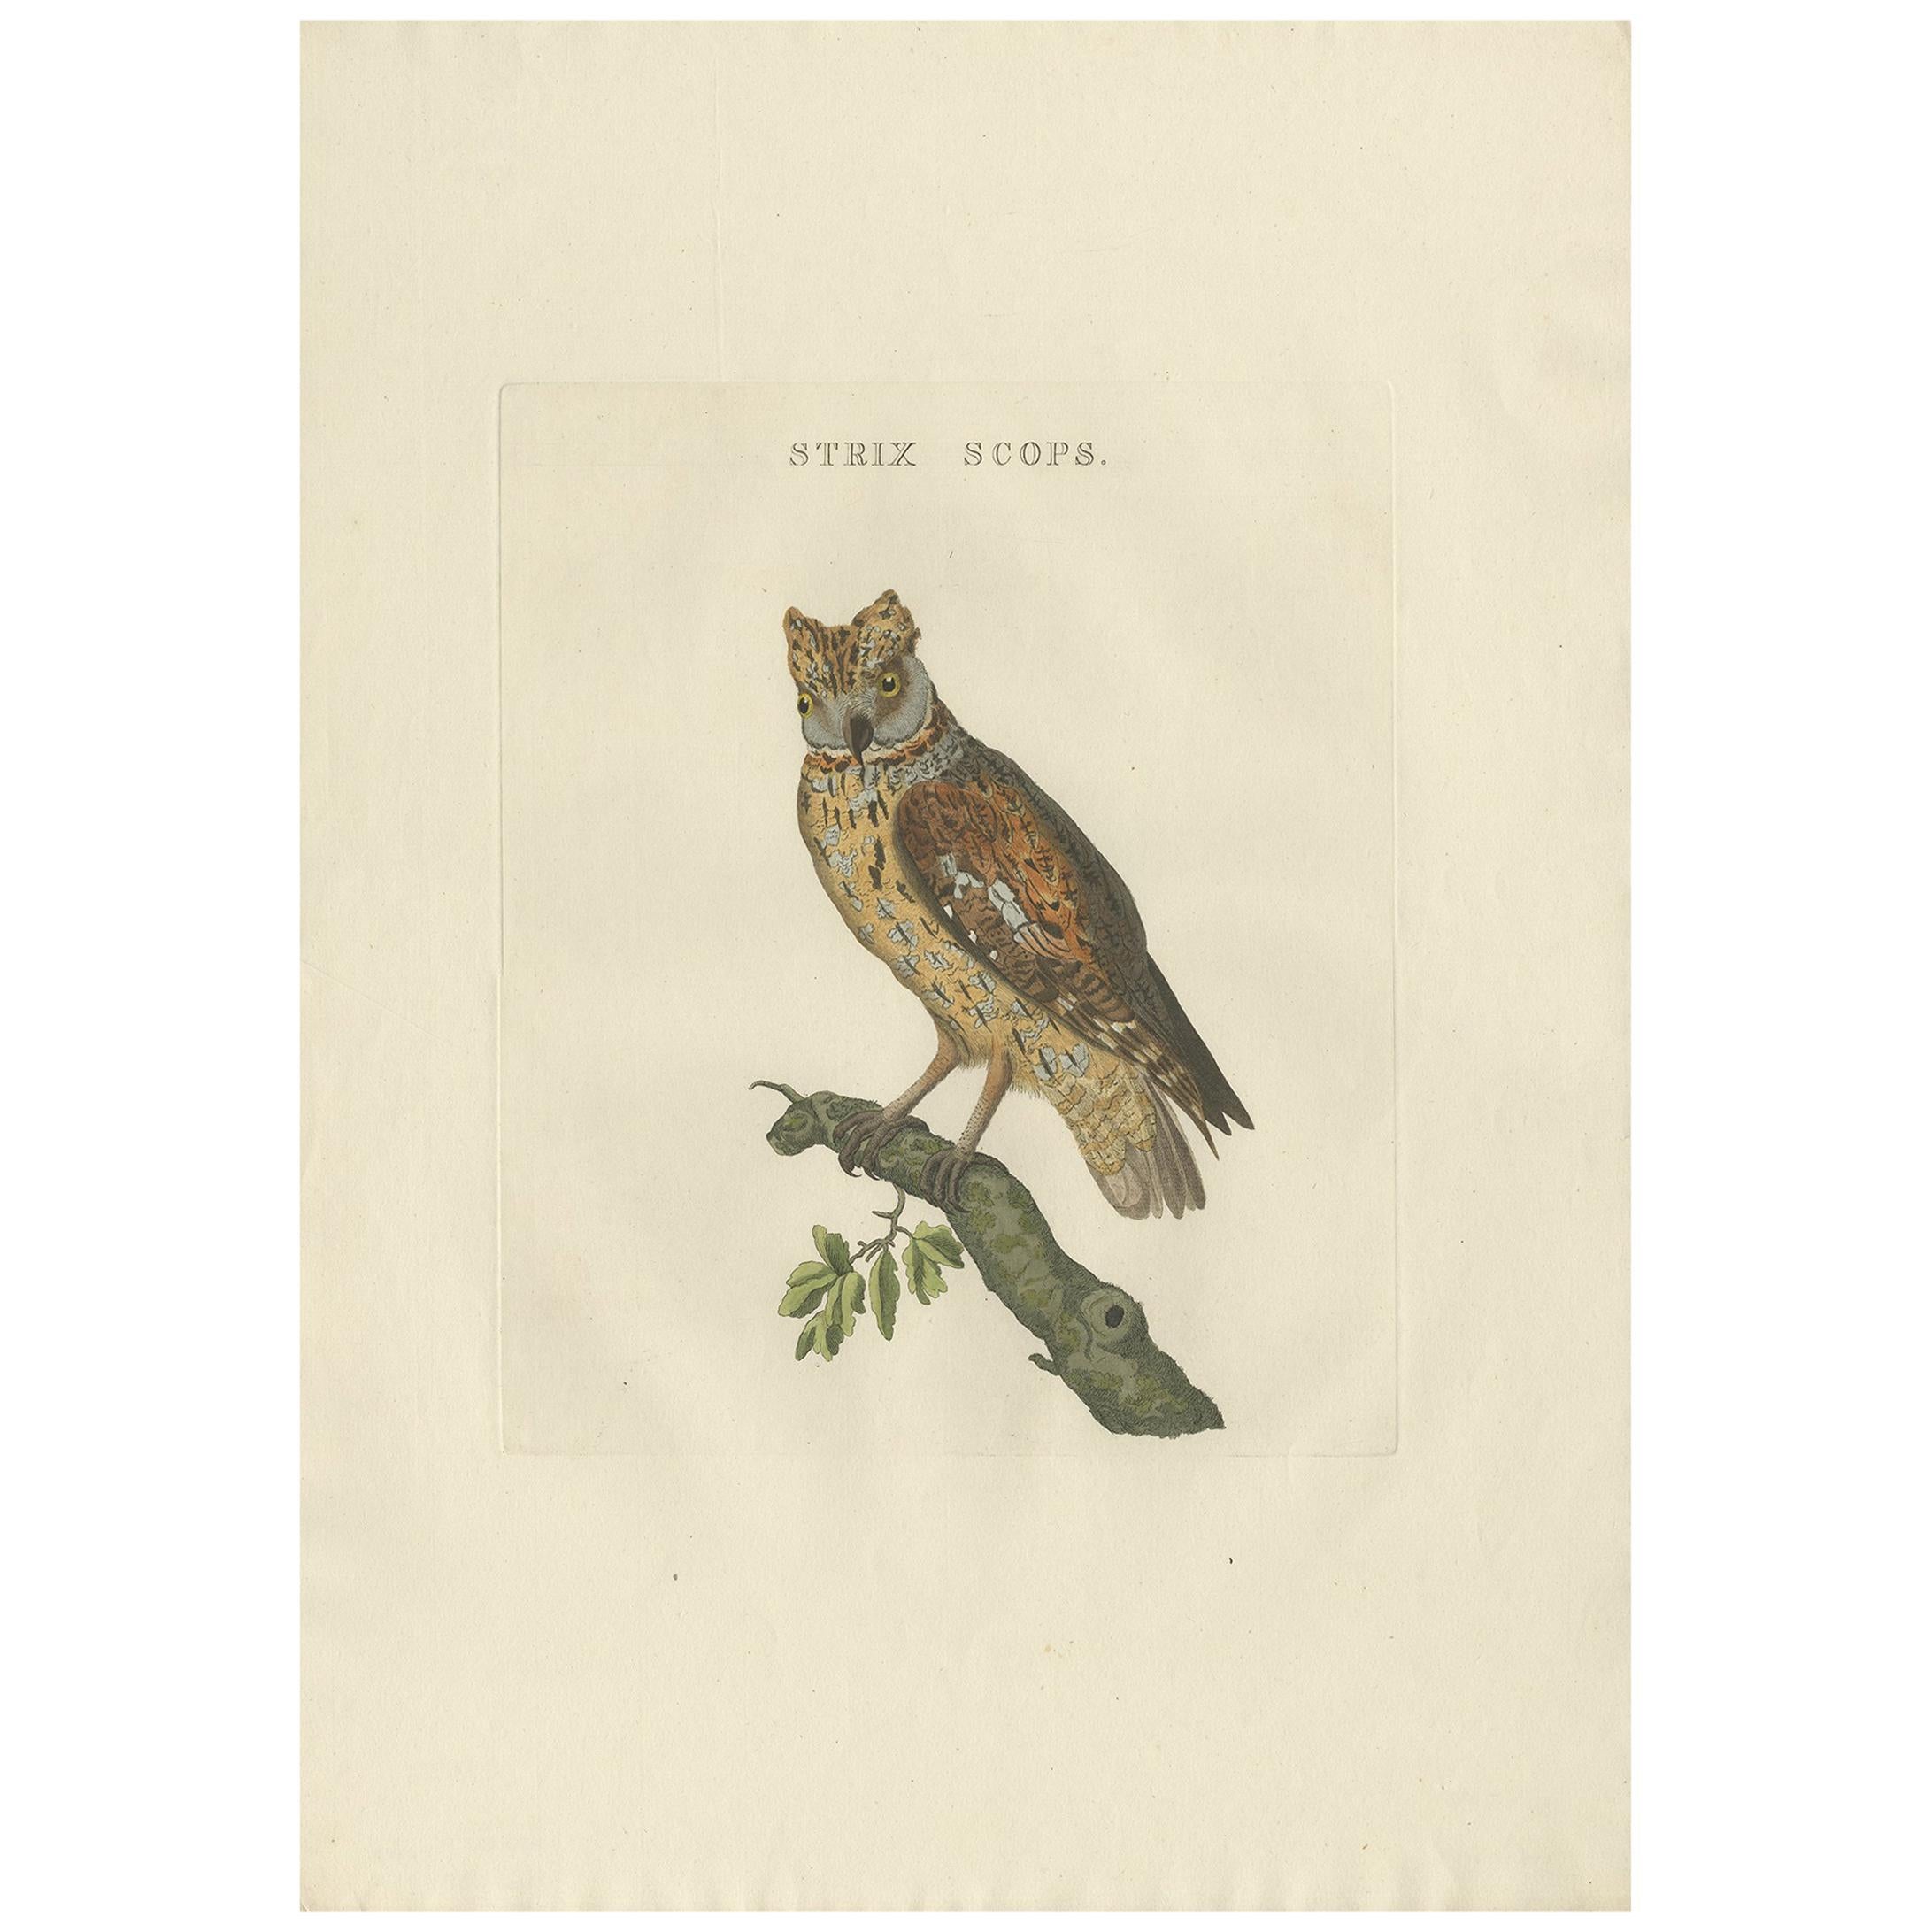 Antique Bird Print of a Eurasion Scops Owl by Sepp & Nozeman, 1809